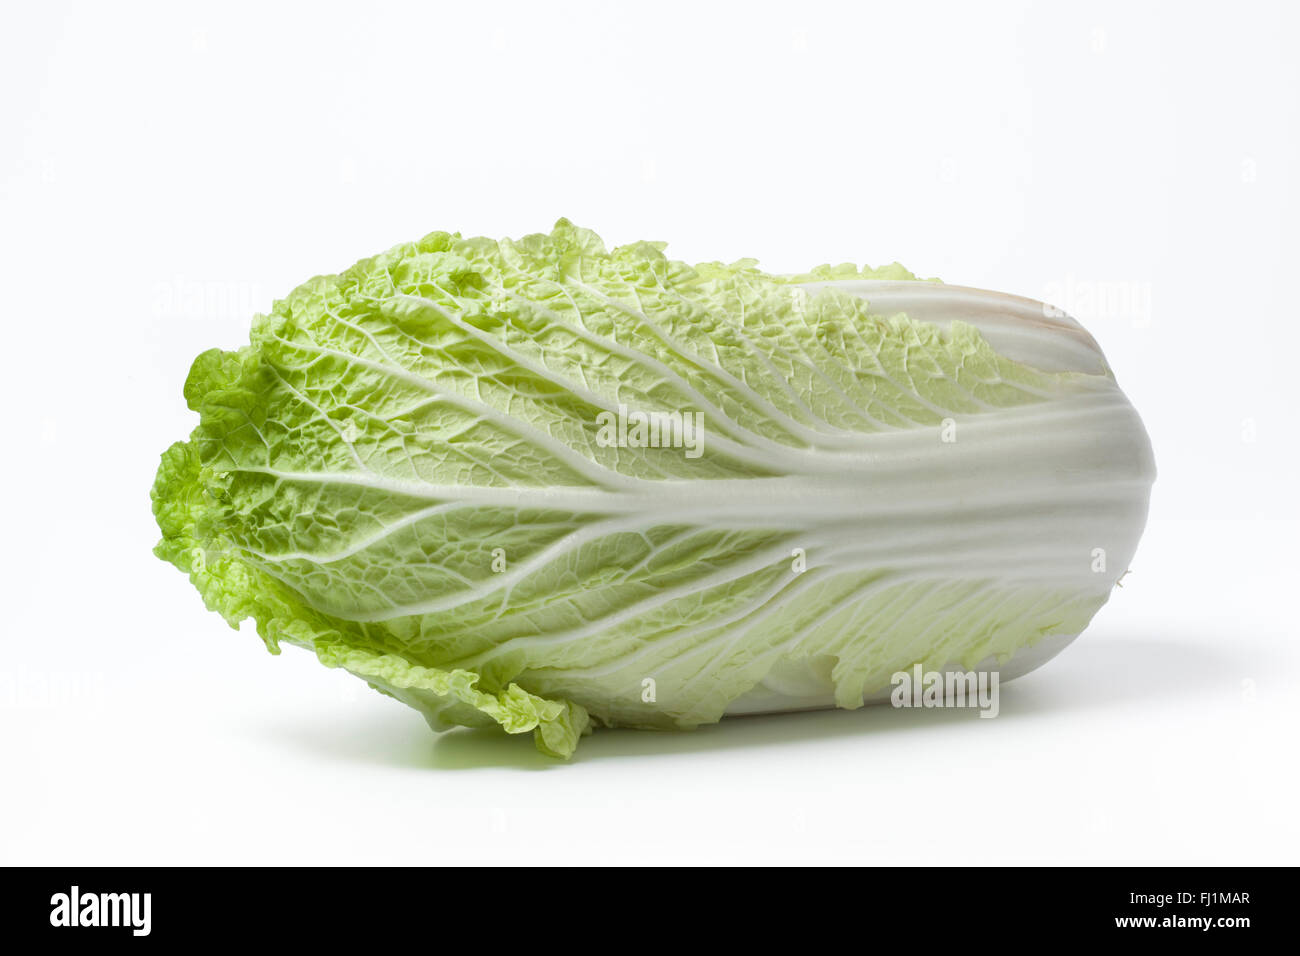 Fresh whole raw Chinese cabbage on white background Stock Photo